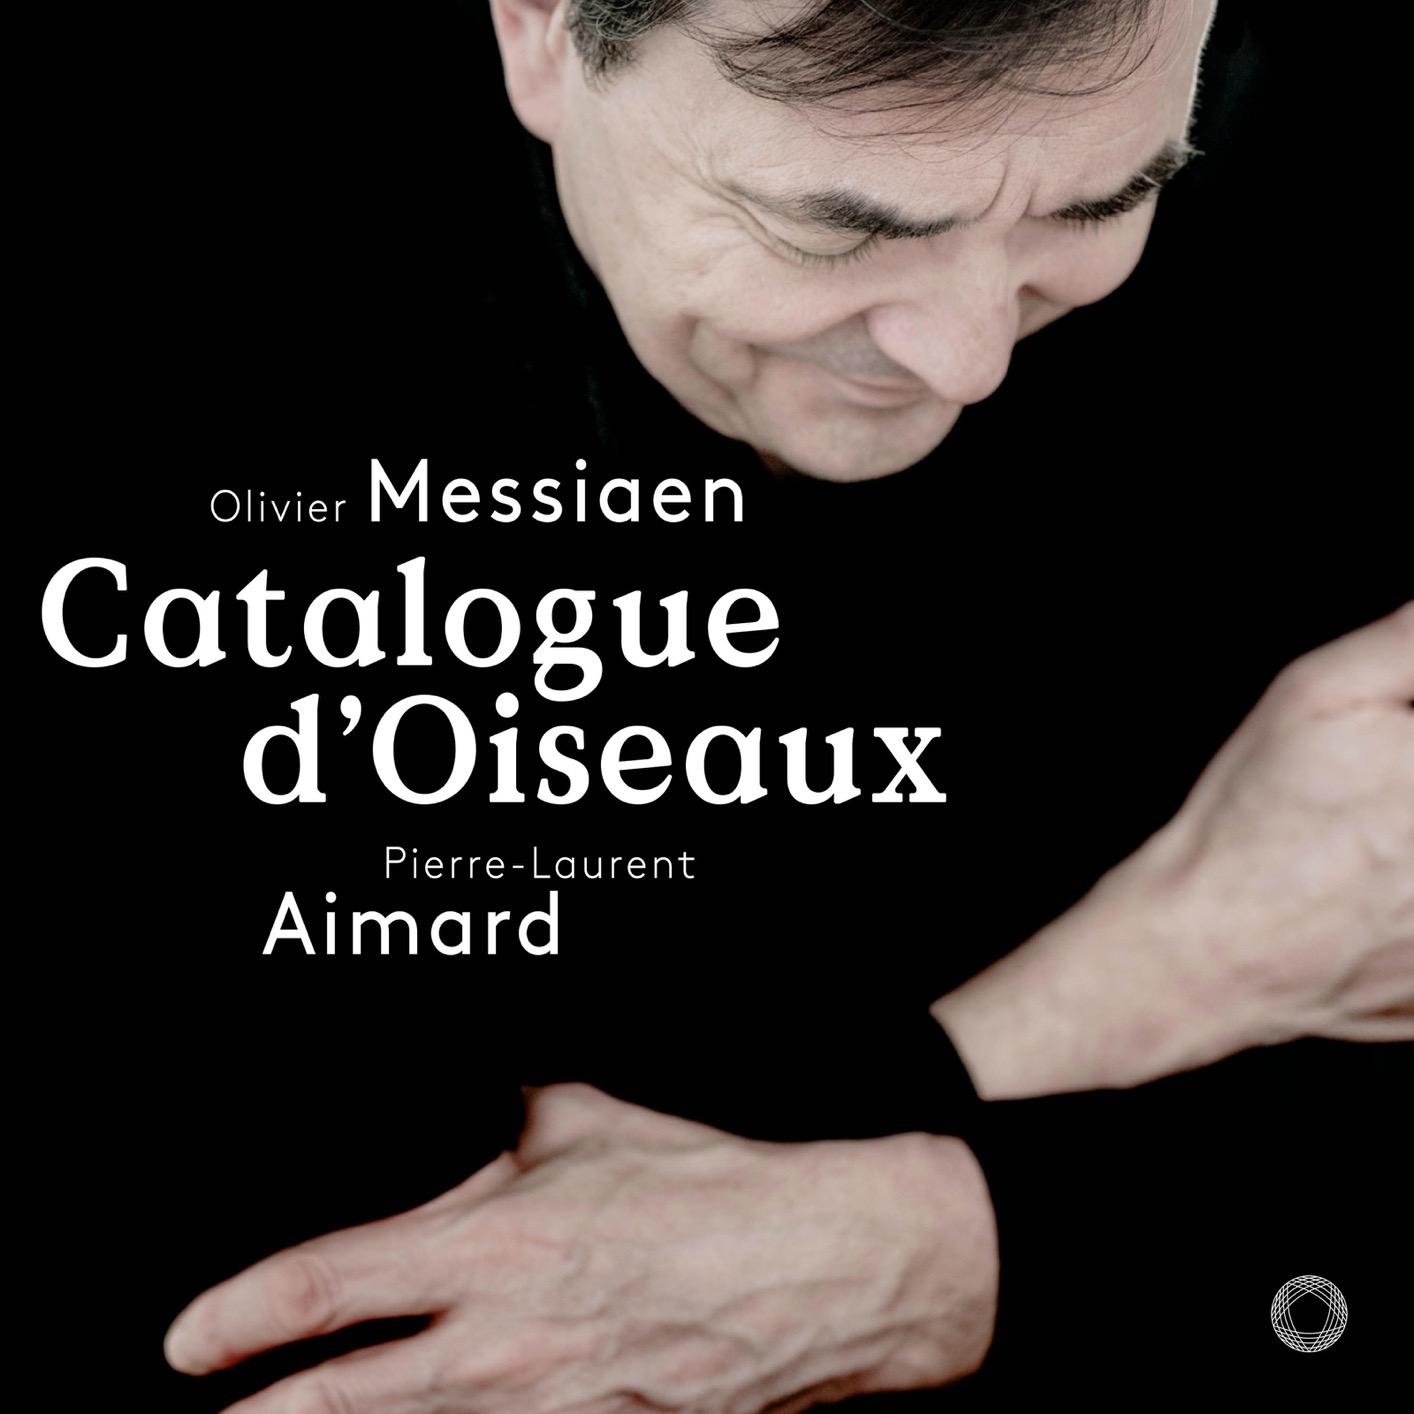 Pierre-Laurent Aimard – Messiaen: Catalogue d’oiseaux, I-42 (2018) [FLAC 24bit/96kHz]